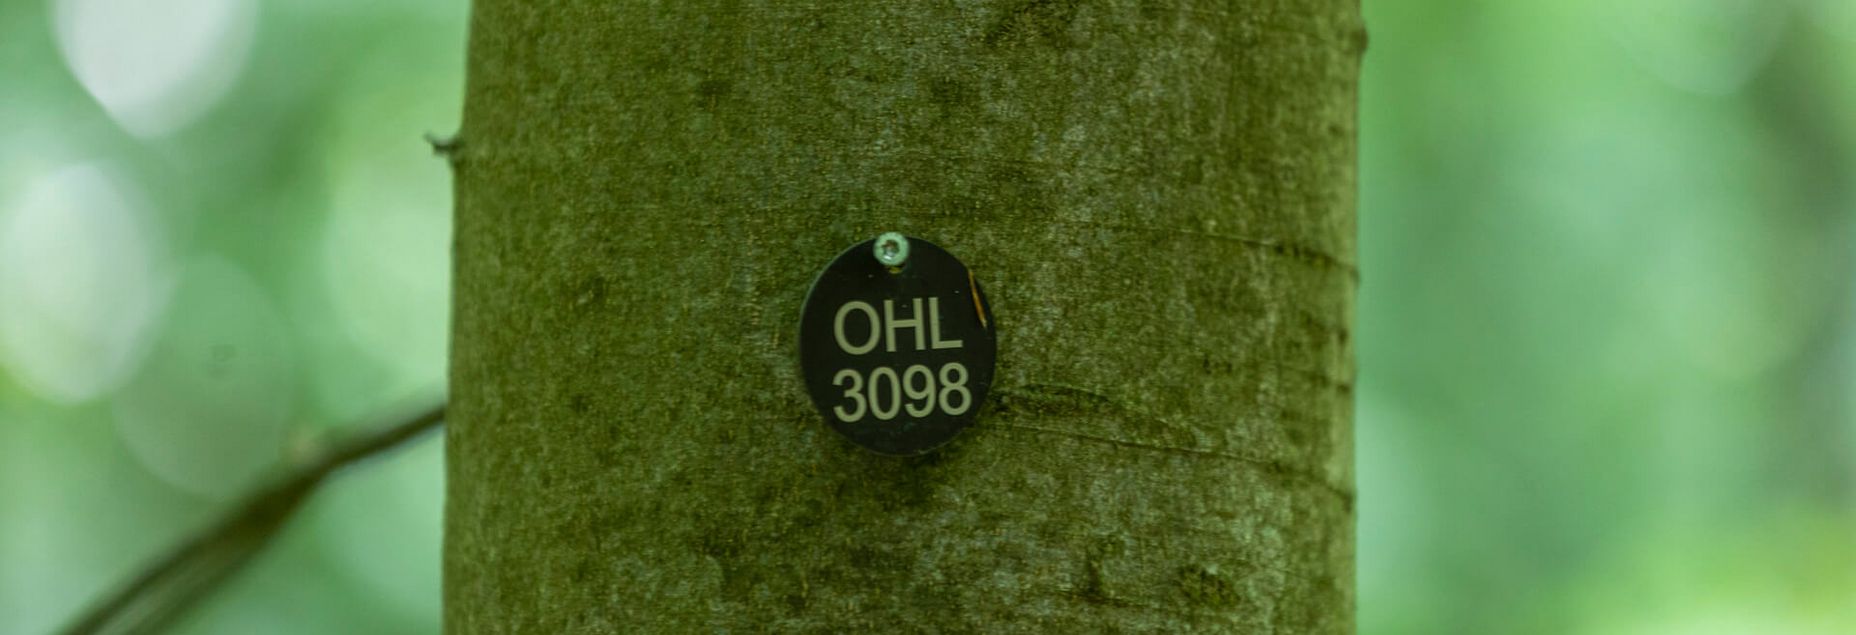 FriedWald-Onlineshop OHL 3098